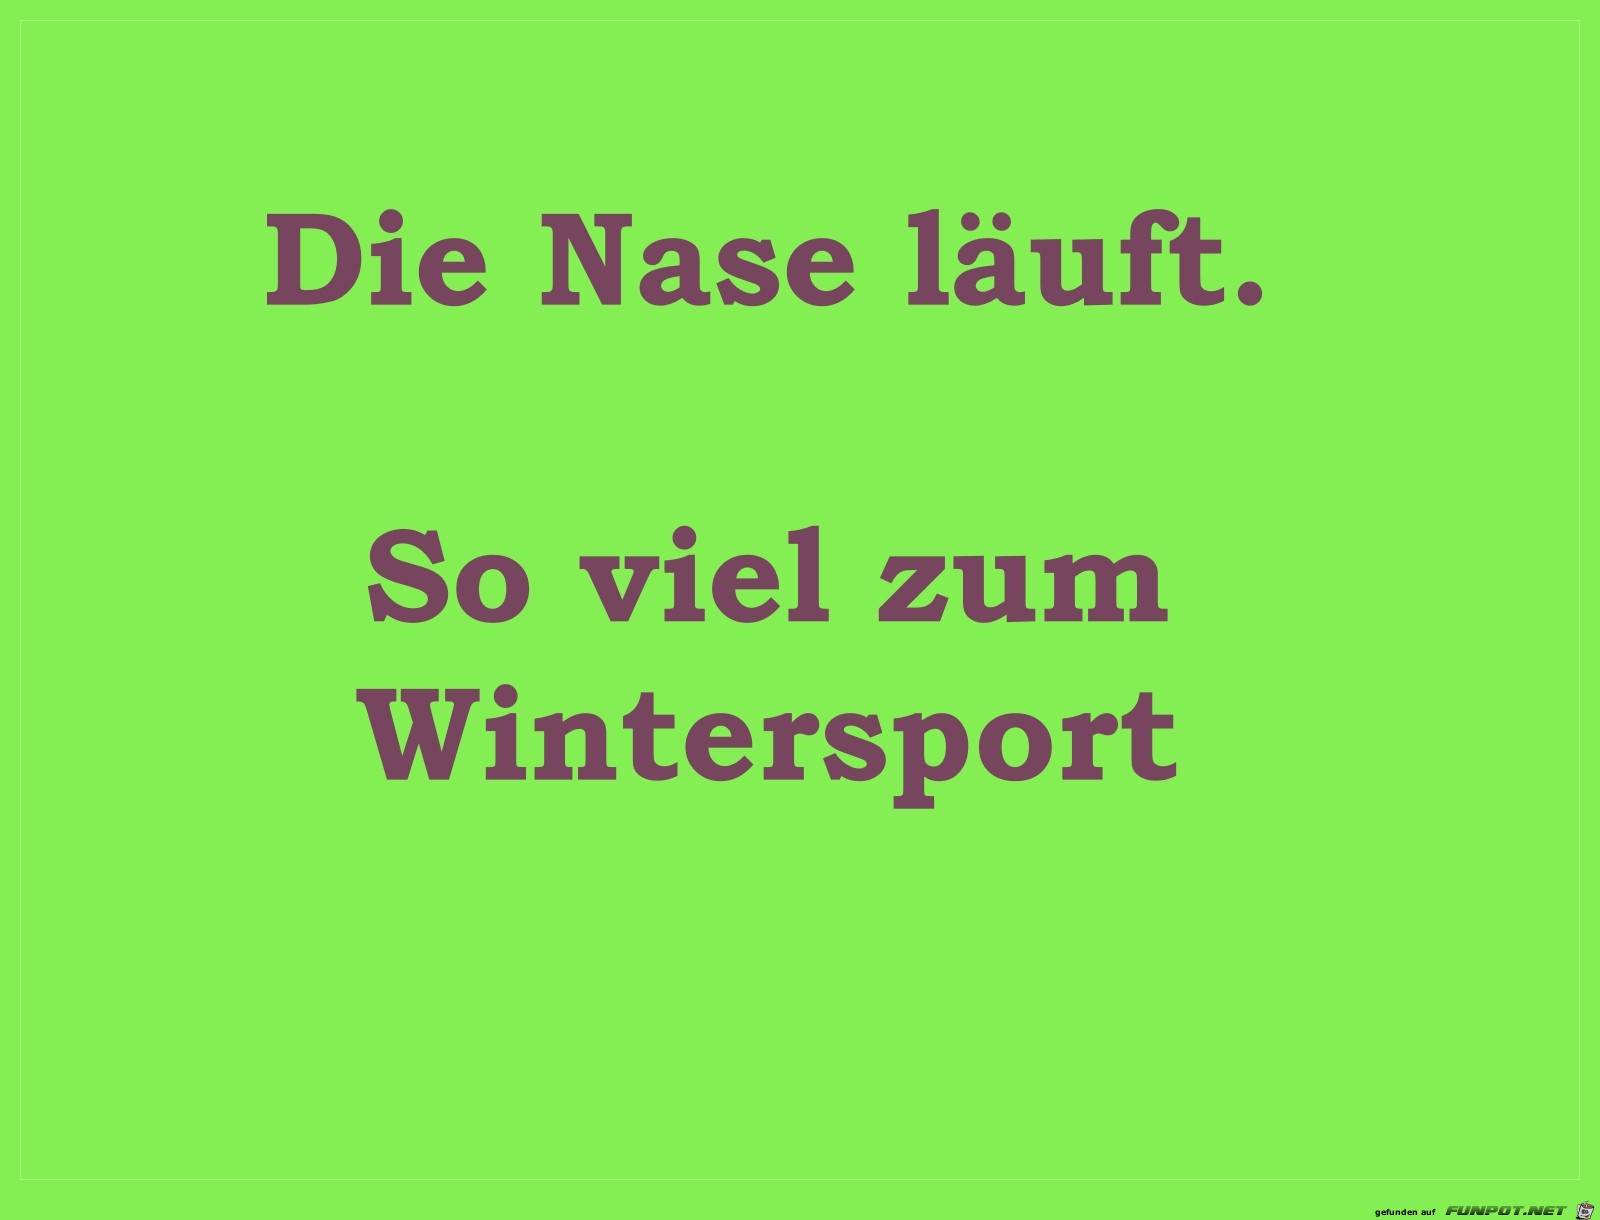 wintersport